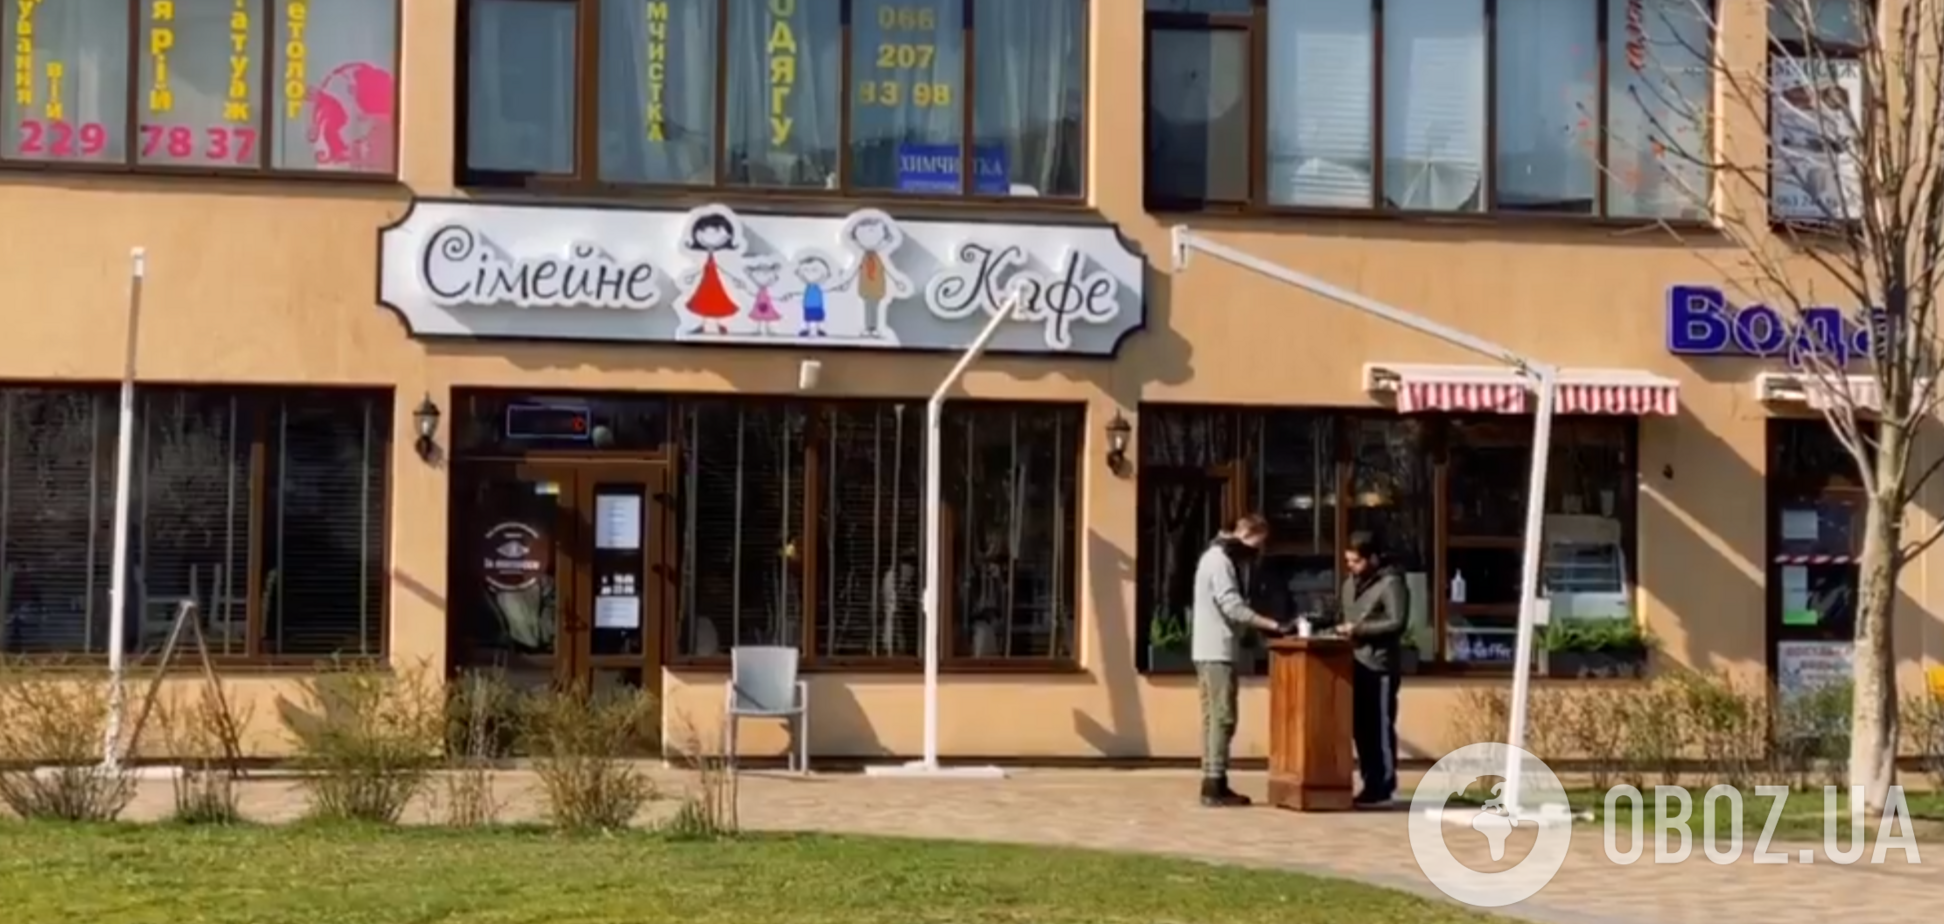 В Киеве заведения питания пошли на хитрость и не закрылись на карантин